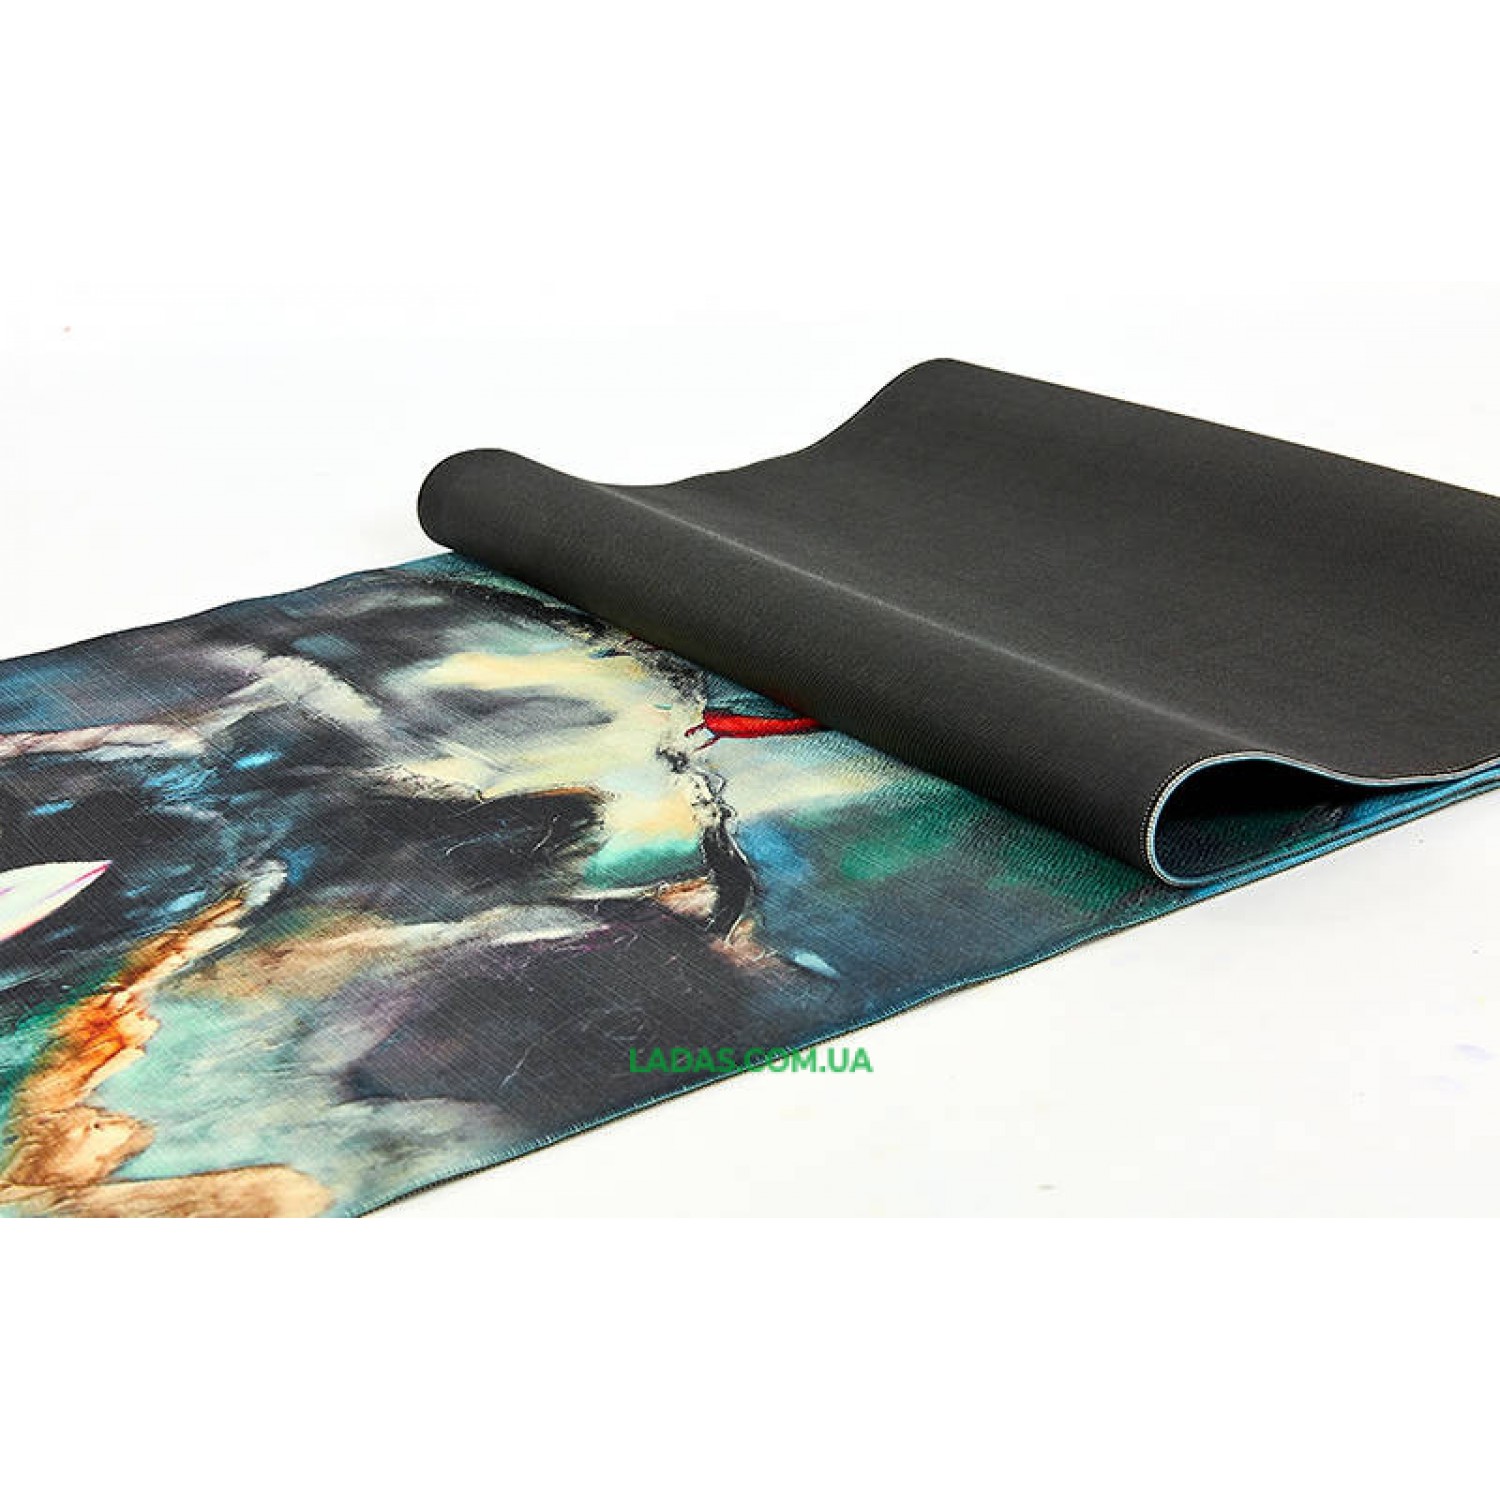 Коврик для йоги Джутовый (Yoga mat) двухслойный (1,83мx0,61мx3мм, лен, каучук)